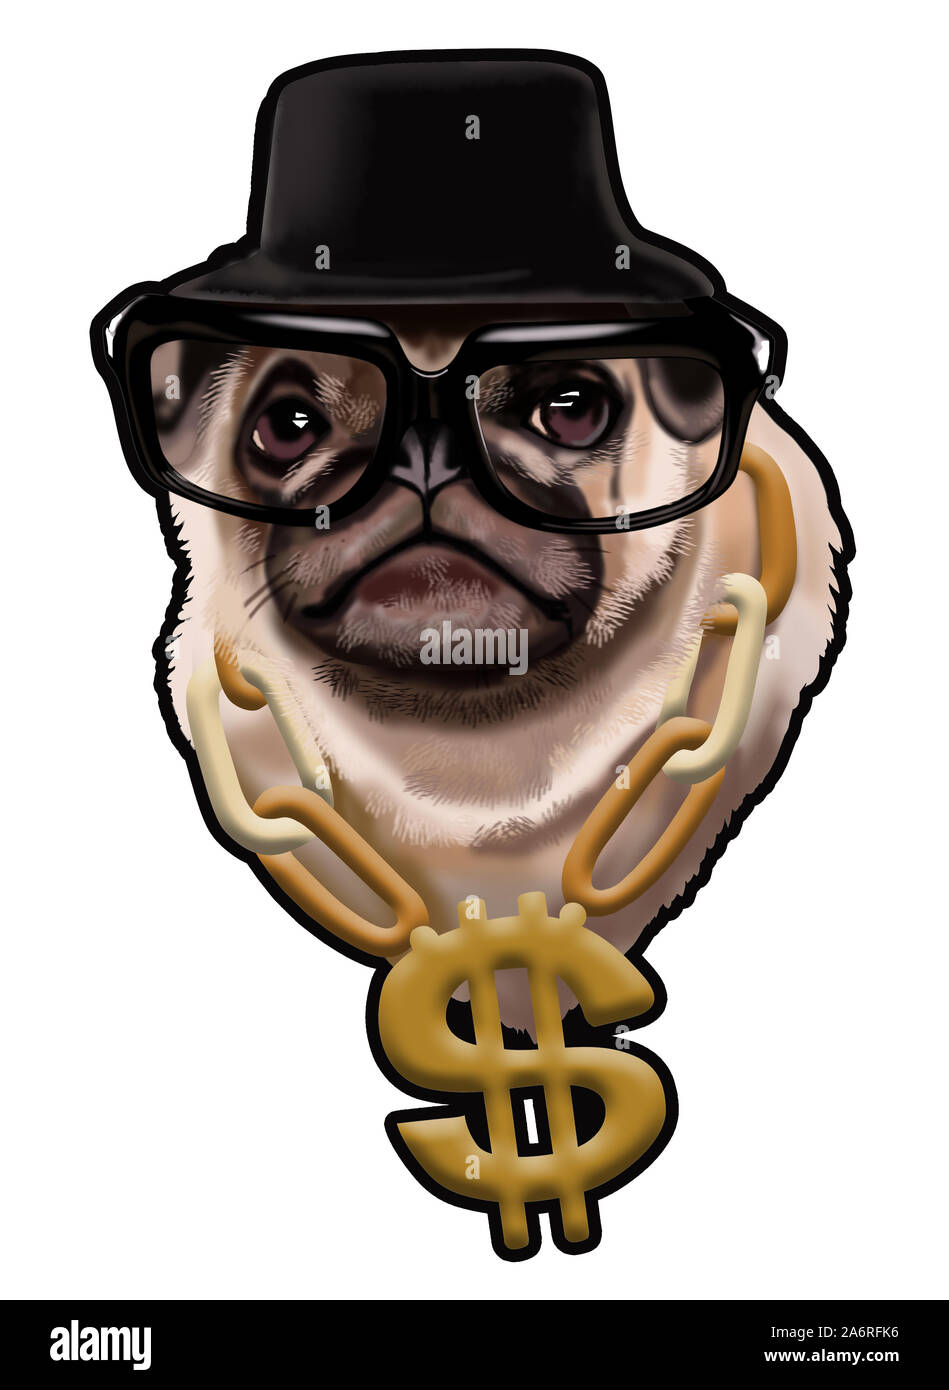 Illustration d'un pug dans un chapeau noir et des verres avec une chaîne d'or, illustration numérique portrait d'un pug. Le pug brutal, version image sur un t-shirt Banque D'Images